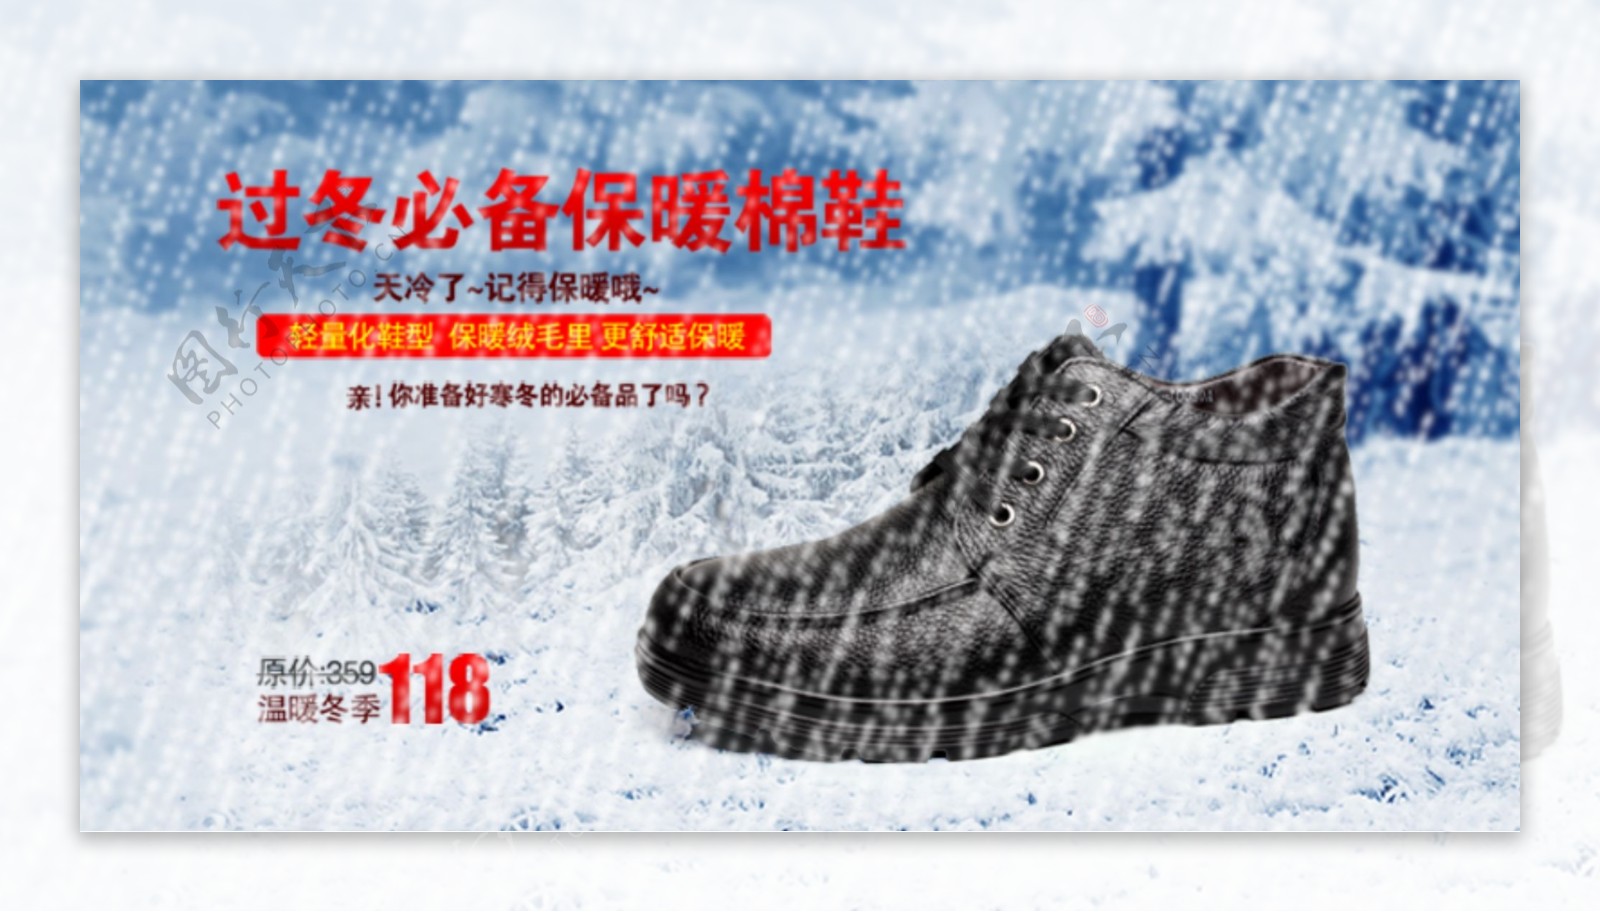 冬季保暖棉鞋促销